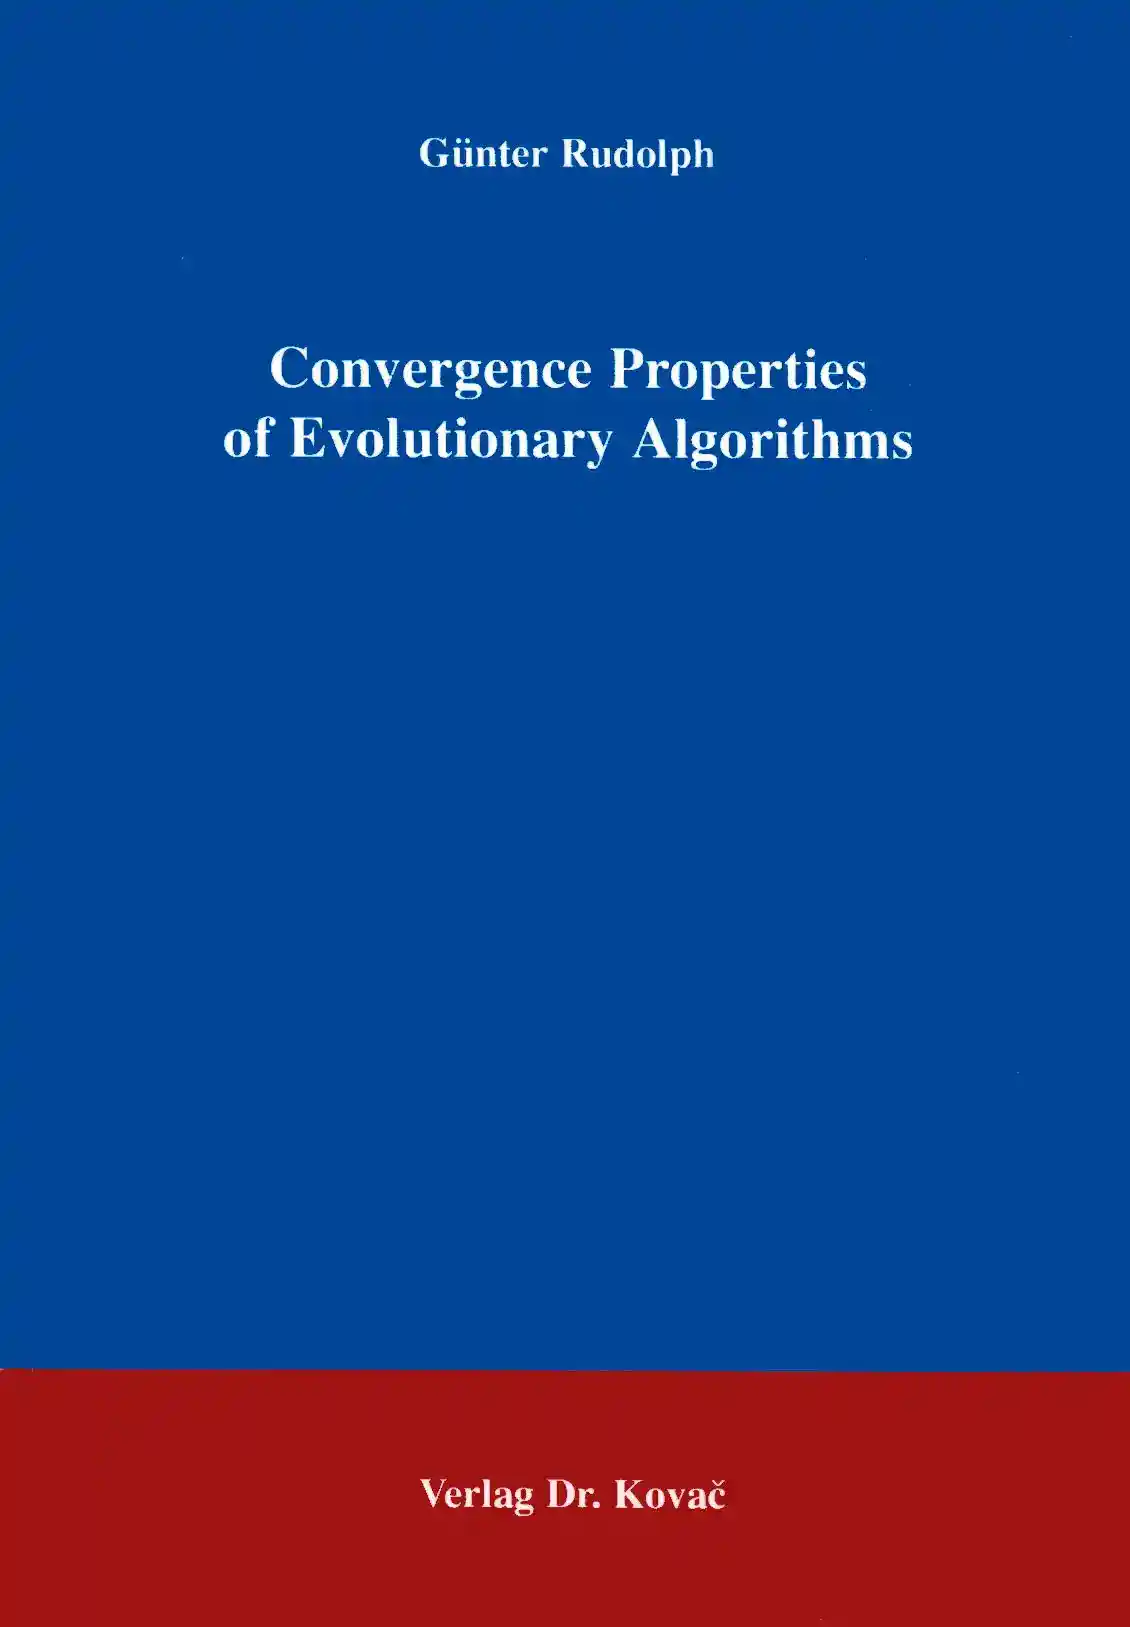 Convergence Properties of Evolutionary Algorithms (Forschungsarbeit)